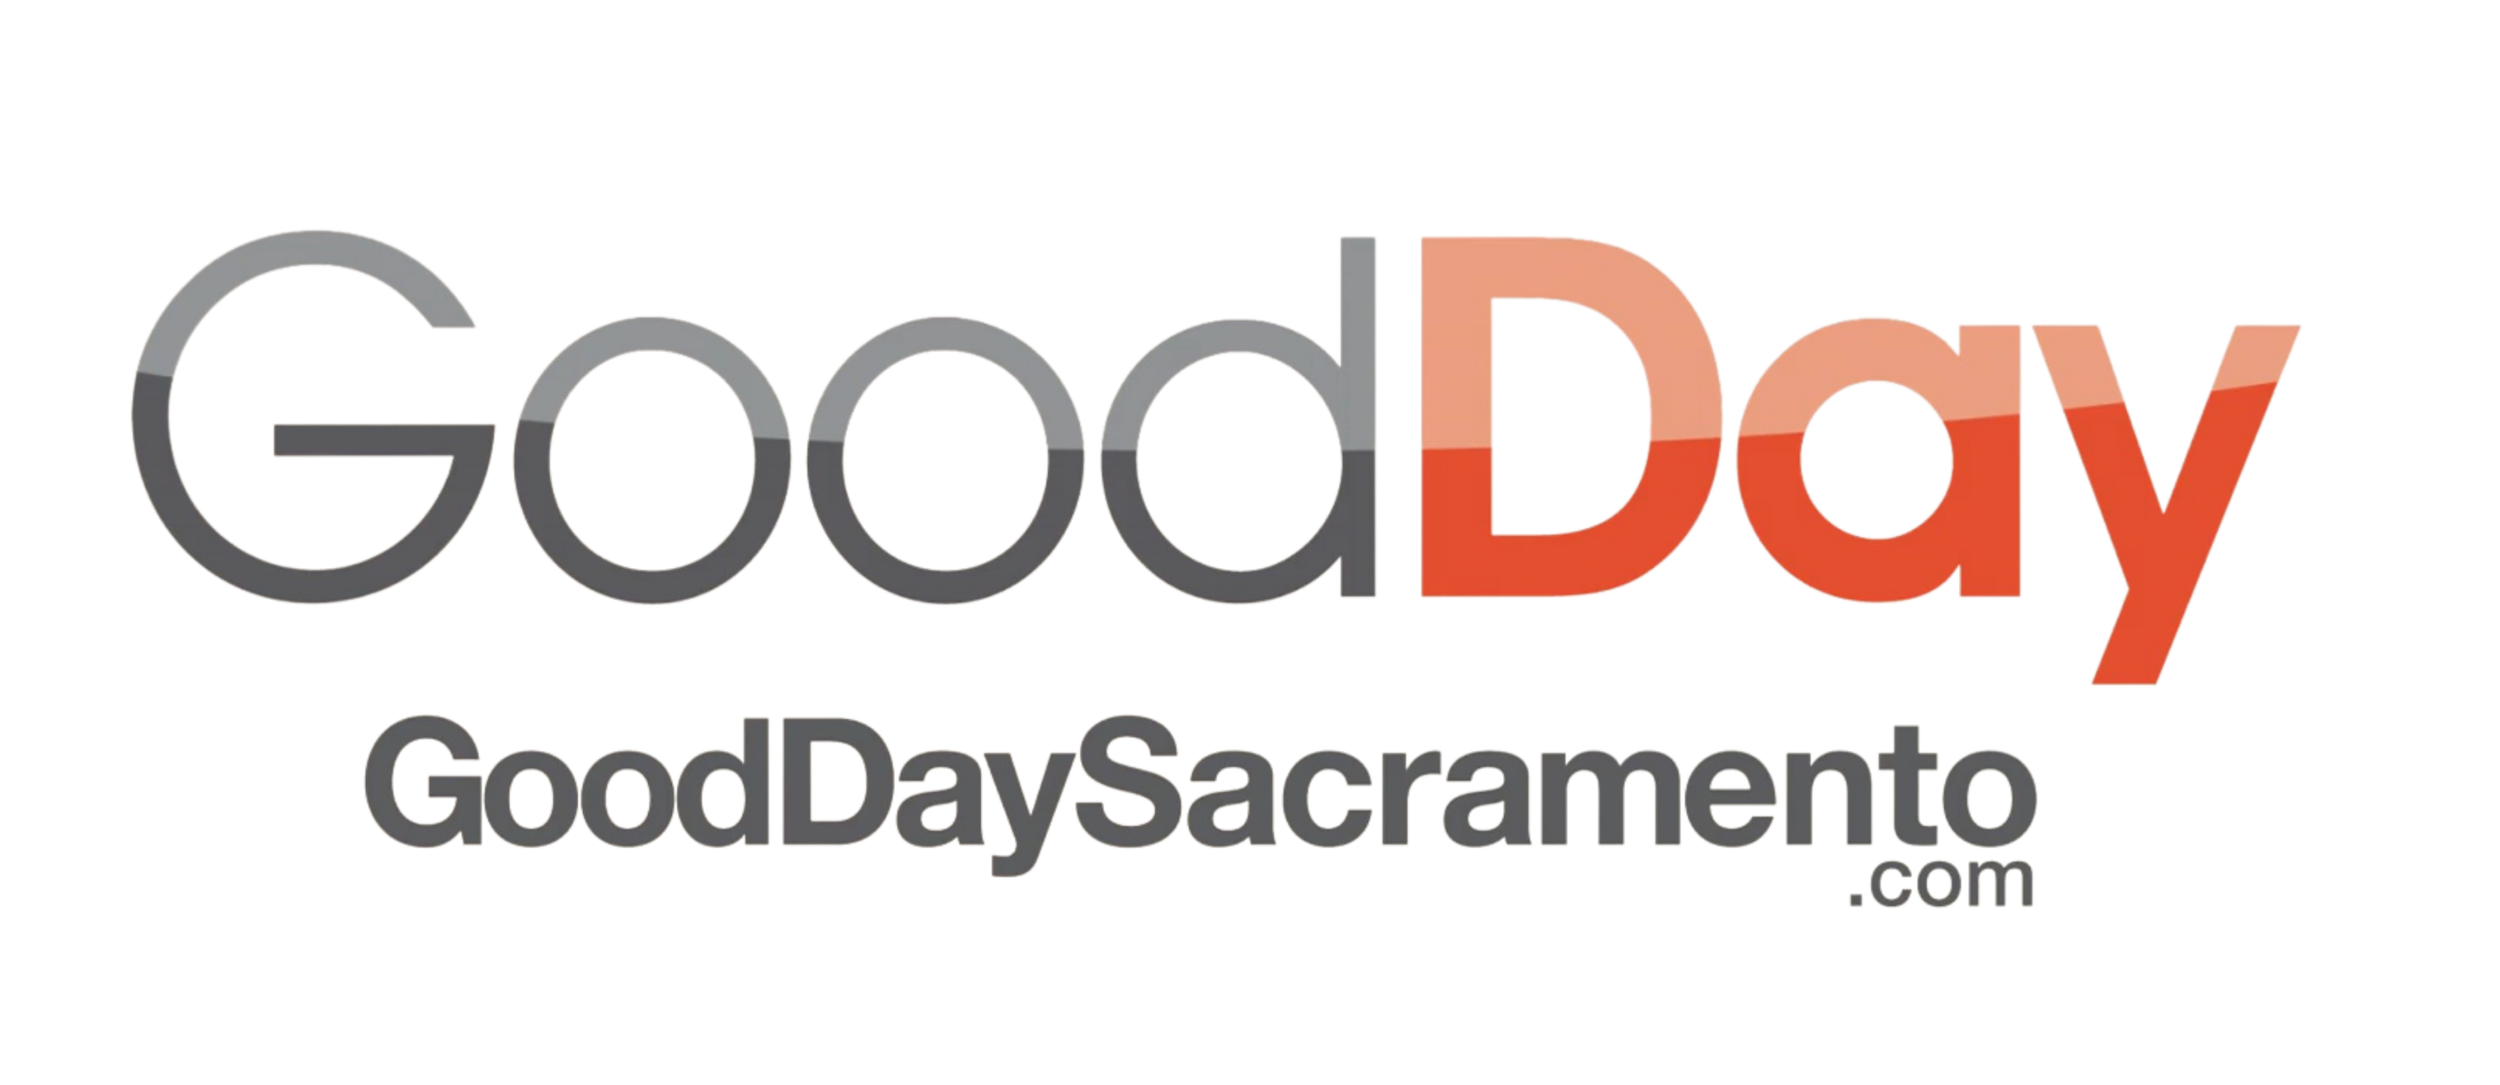 Sacramento Author on Good Day Sac